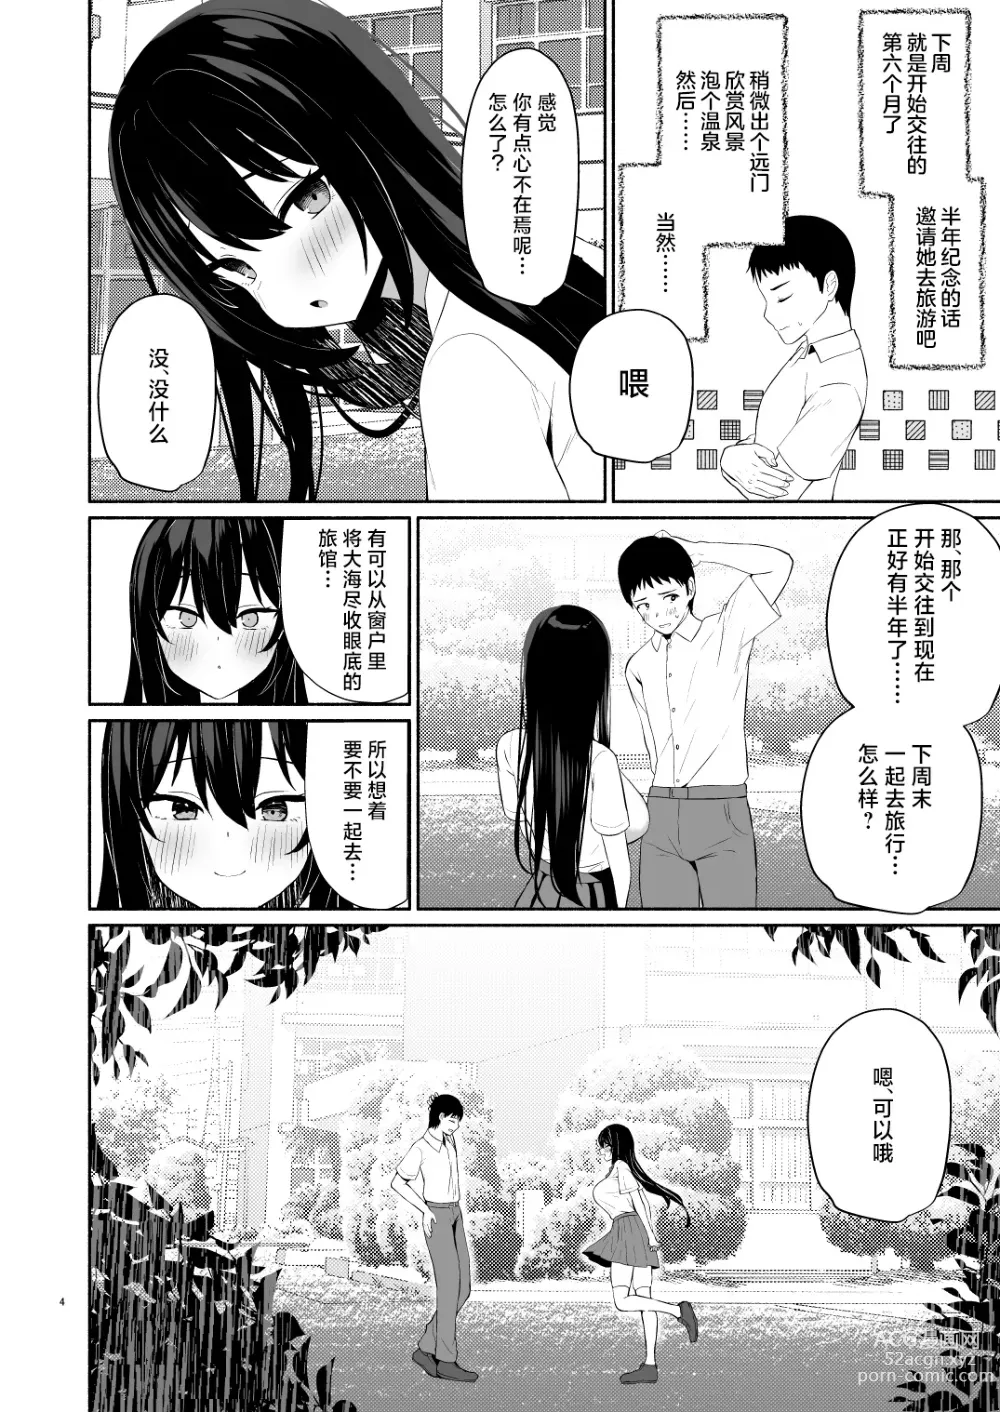 Page 3 of doujinshi Boku no Kanojo wa Midasareru + Omake